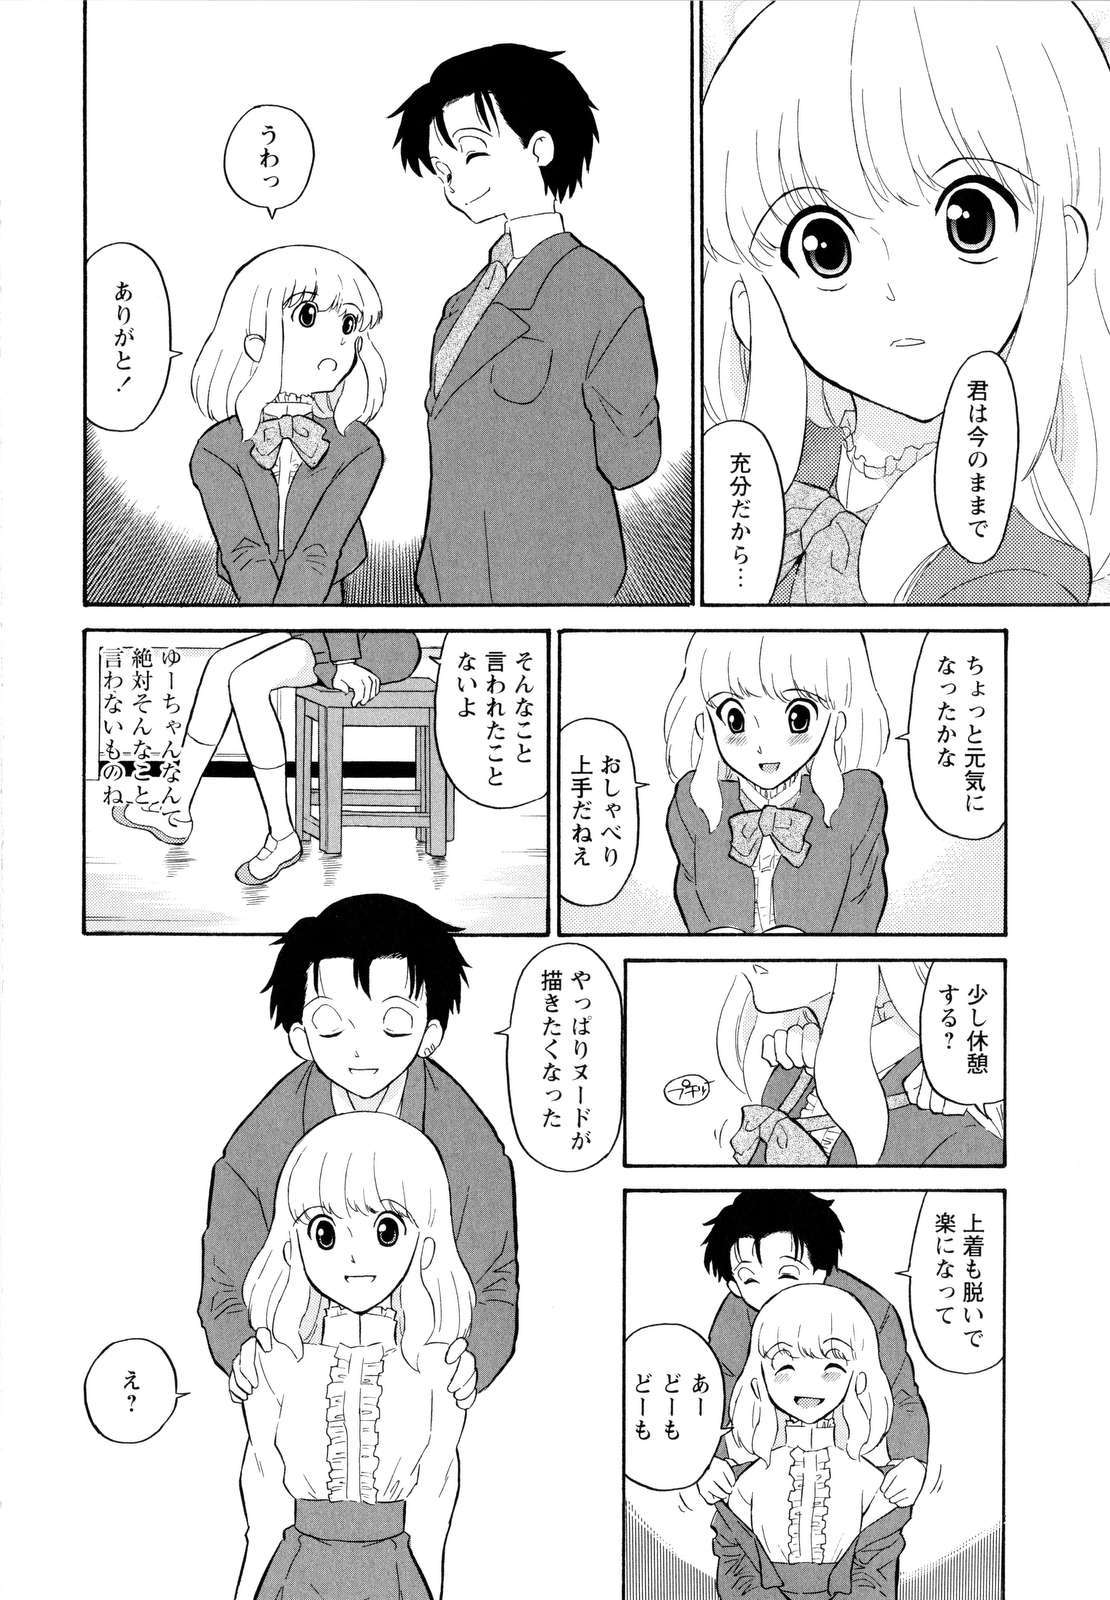 [Dozamura] Haruka 69 Vol.2 page 41 full